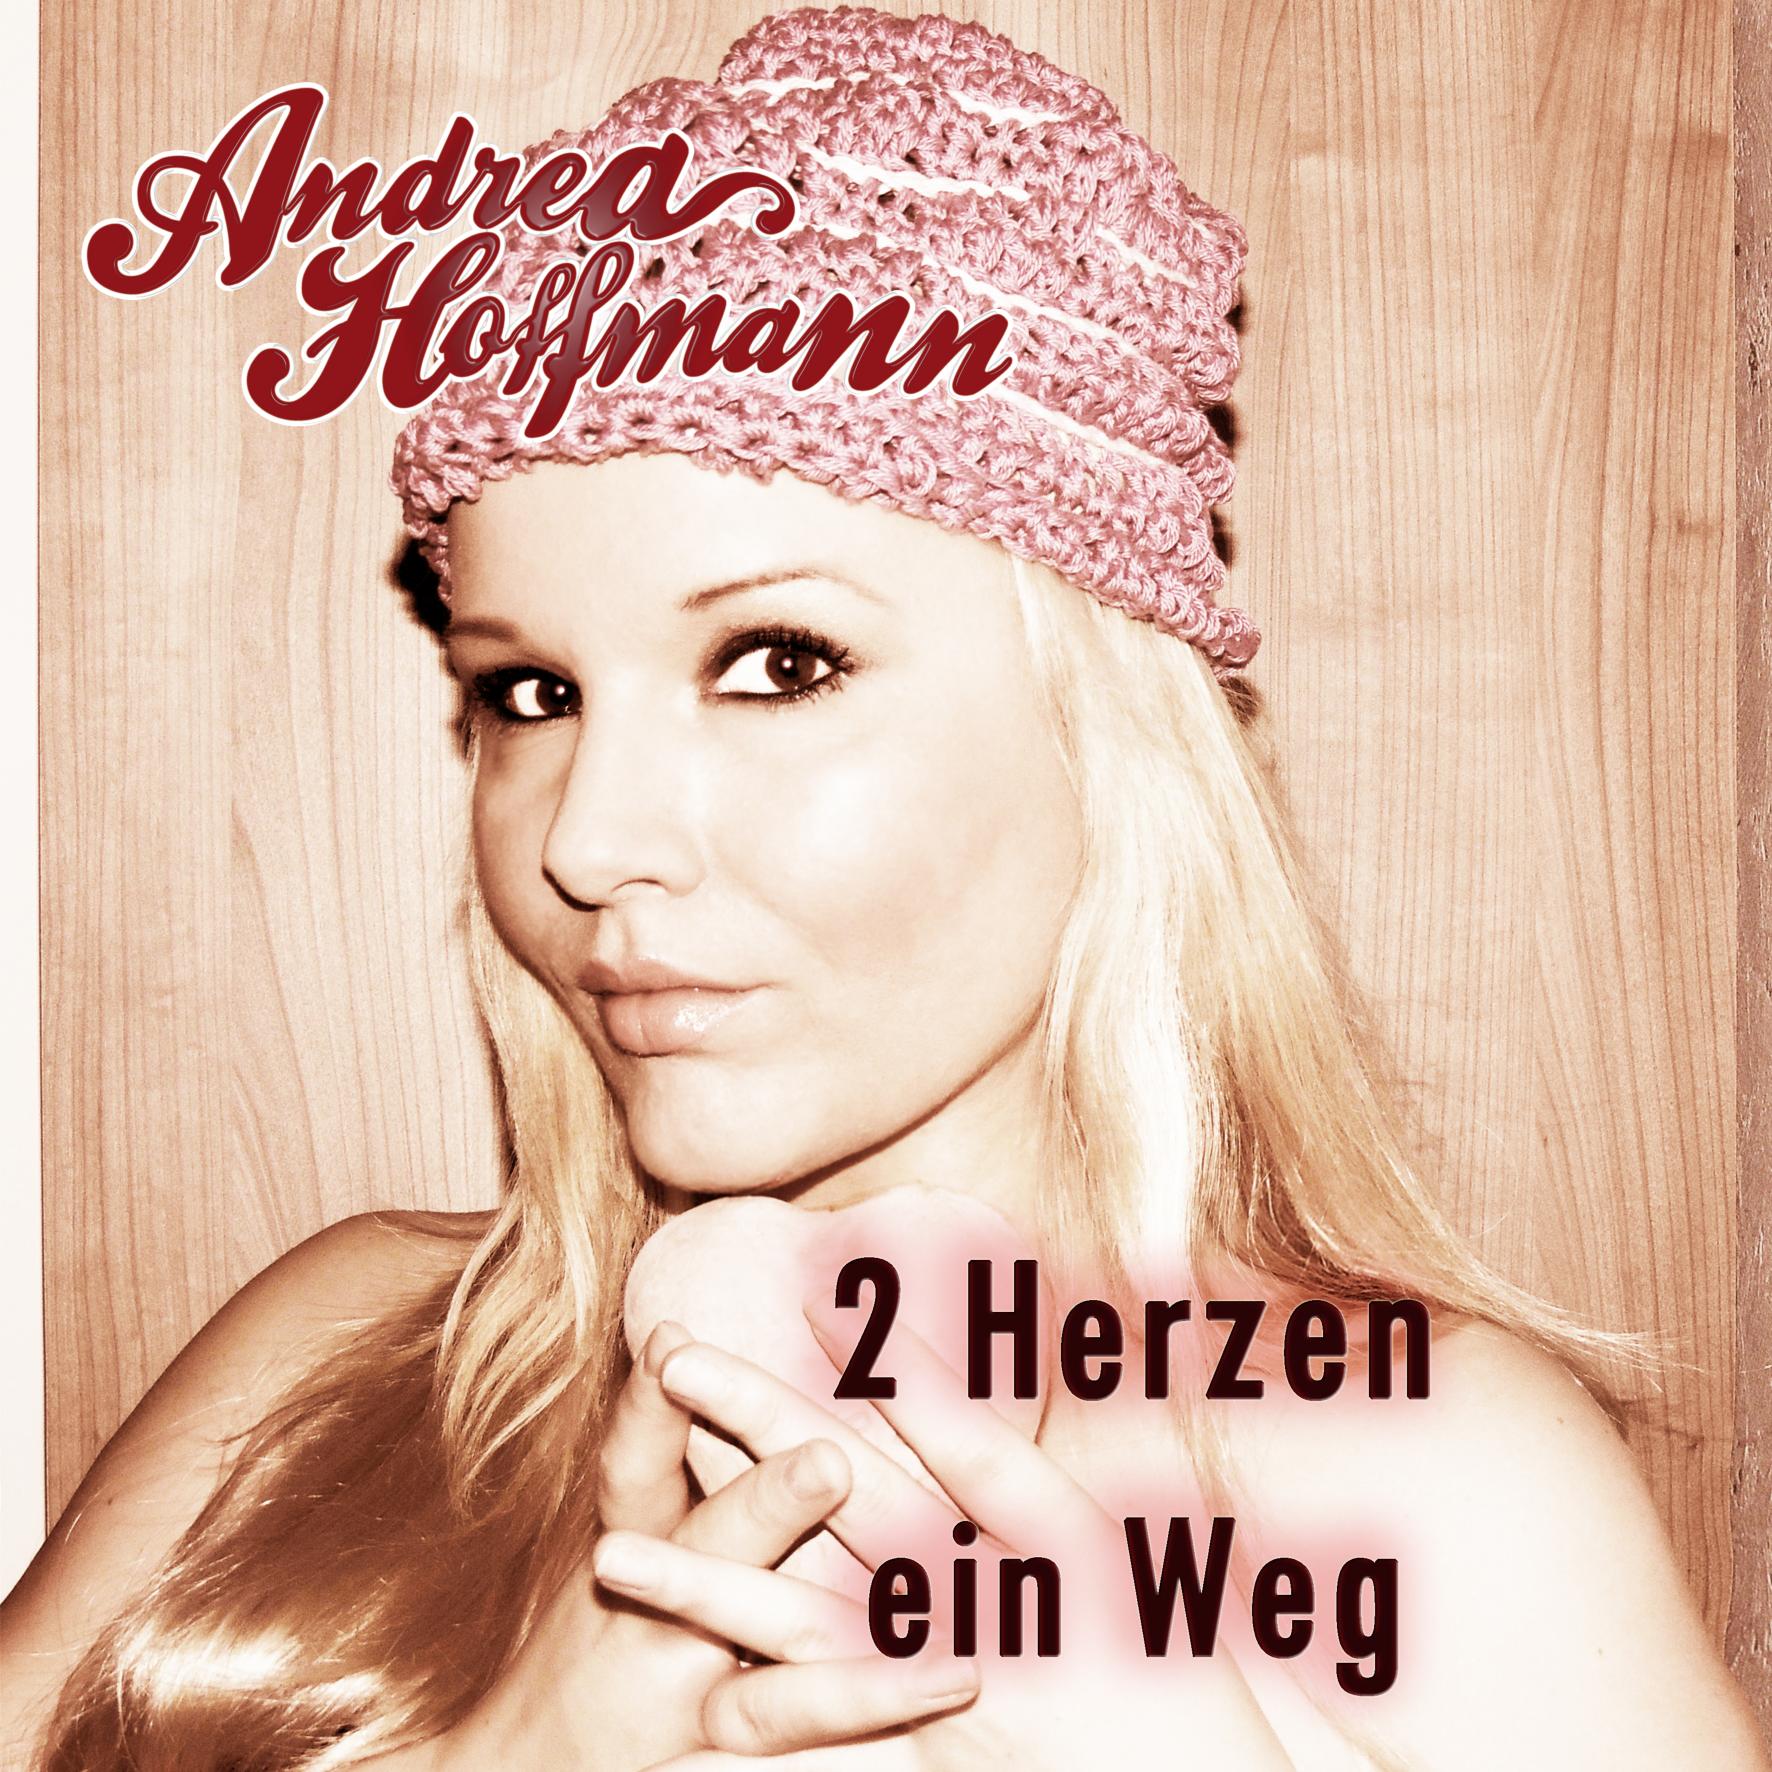 Download-Single "2 Herzen, ein Weg" Andrea Hoffmann